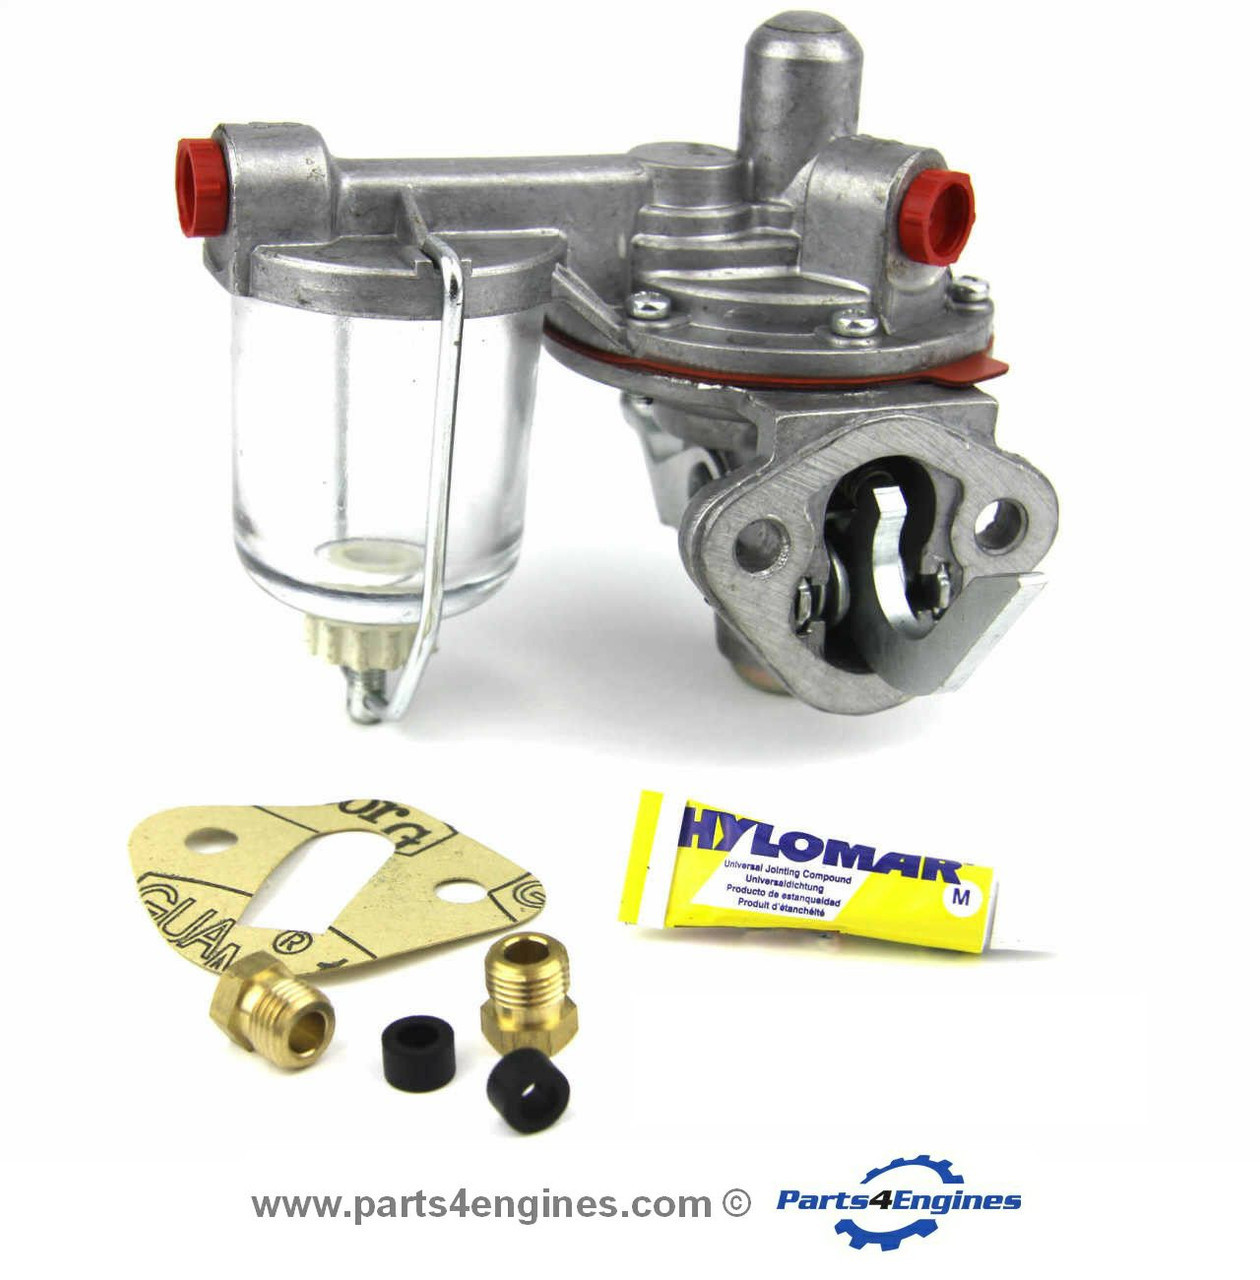 Perkins 4.203 lift pump 2 bolt early - Parts4Engines.com